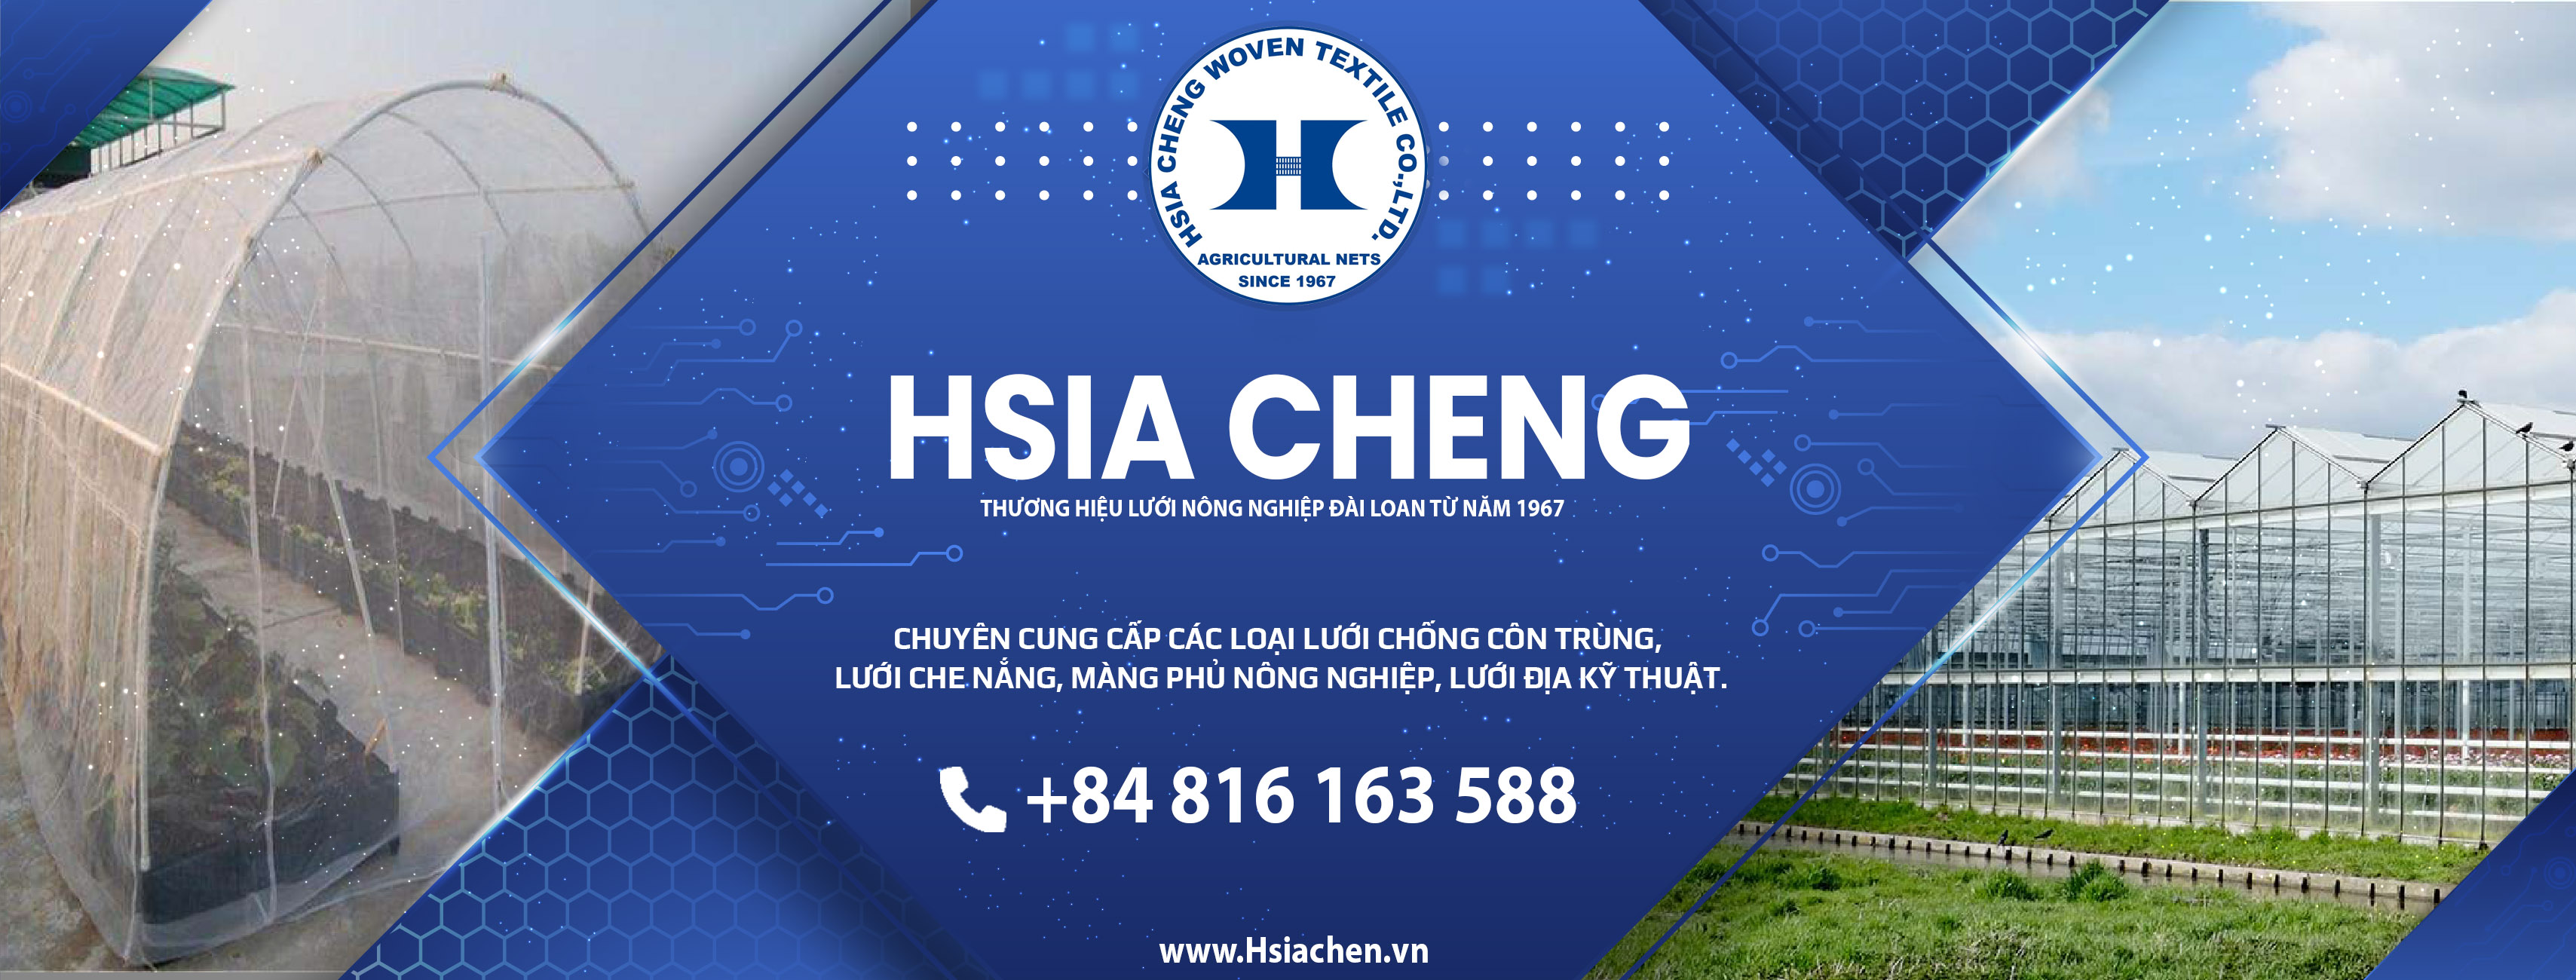 Công ty sản xuất lưới nông nghiệp - Hsia Cheng